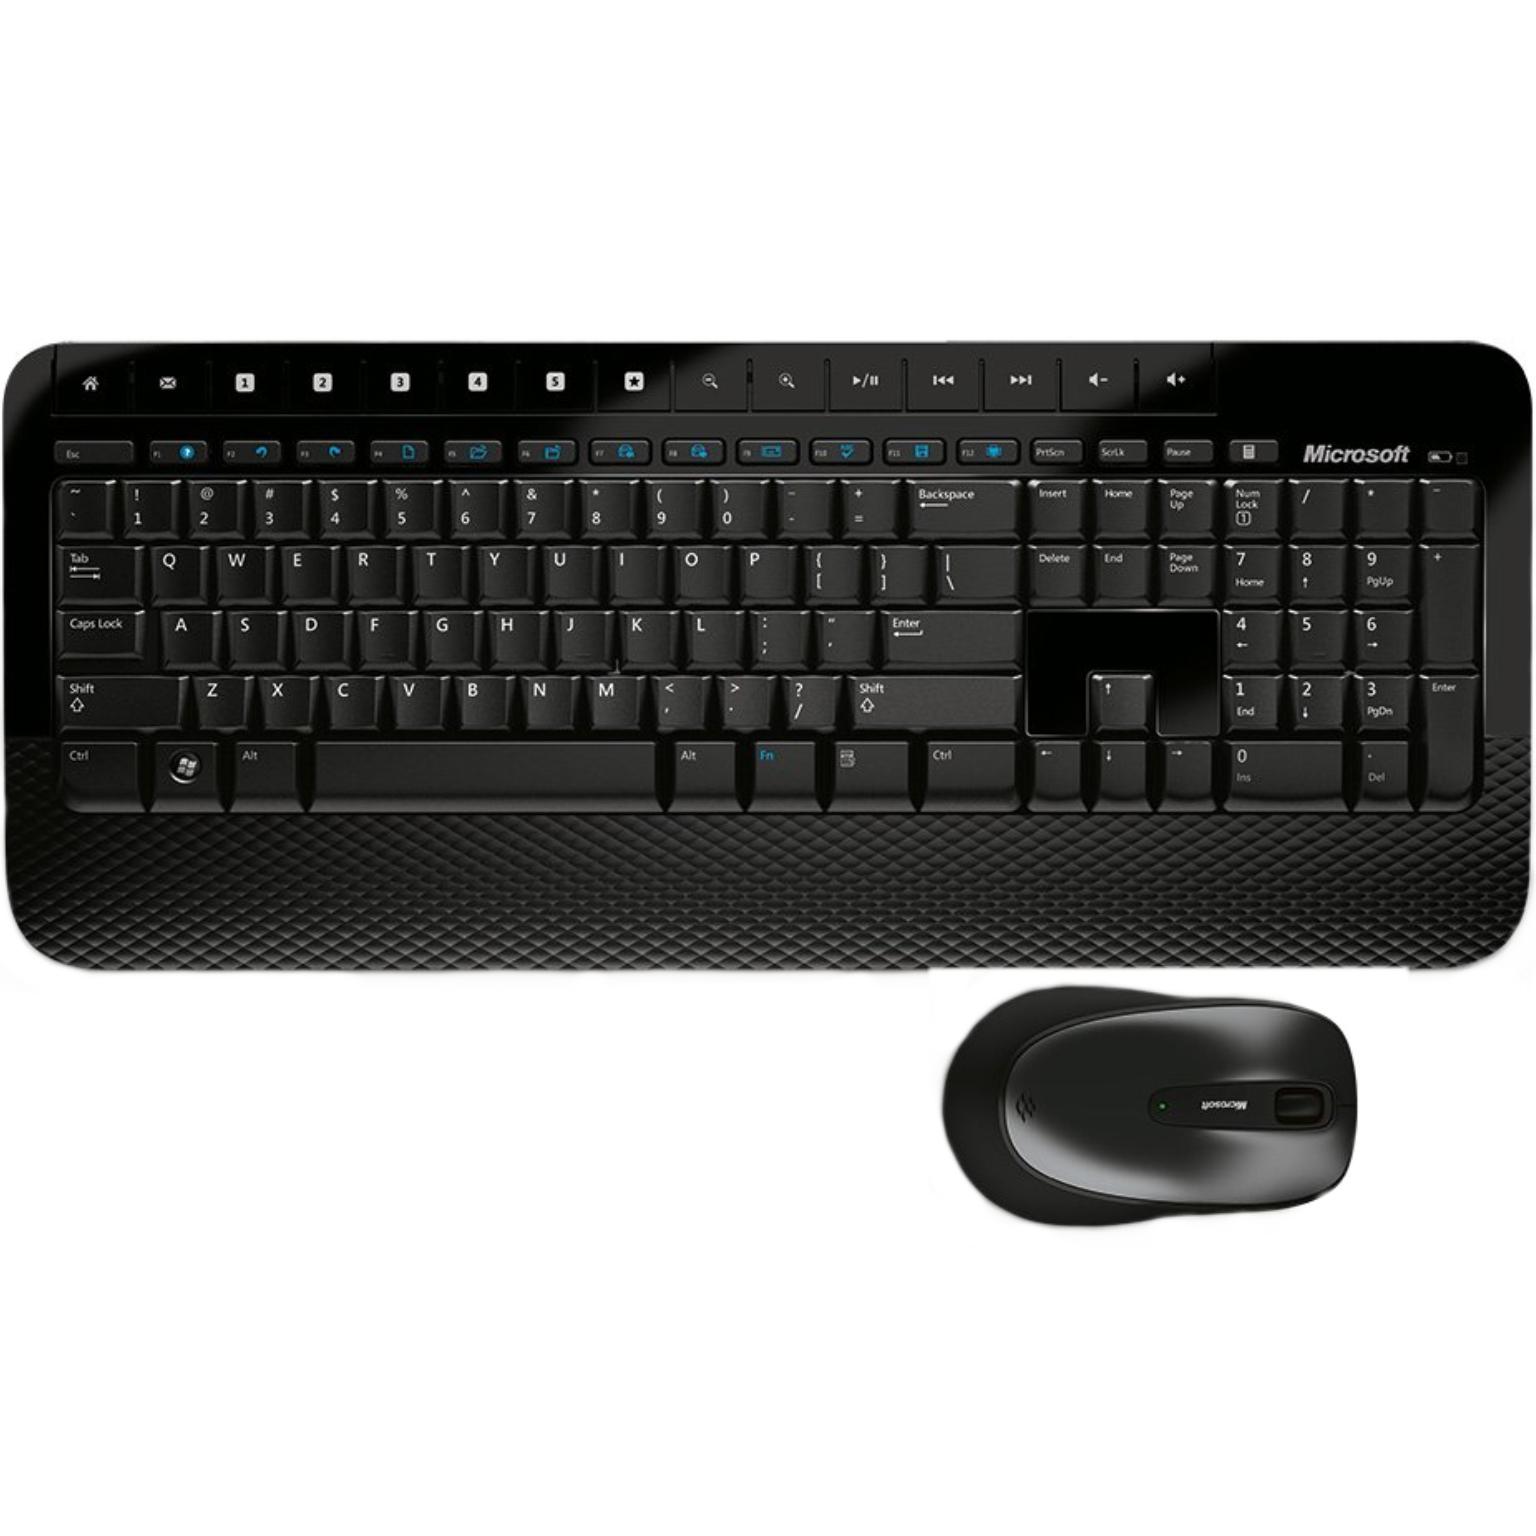 Draadloos toetsenbord met muis - Microsoft - Qwertz